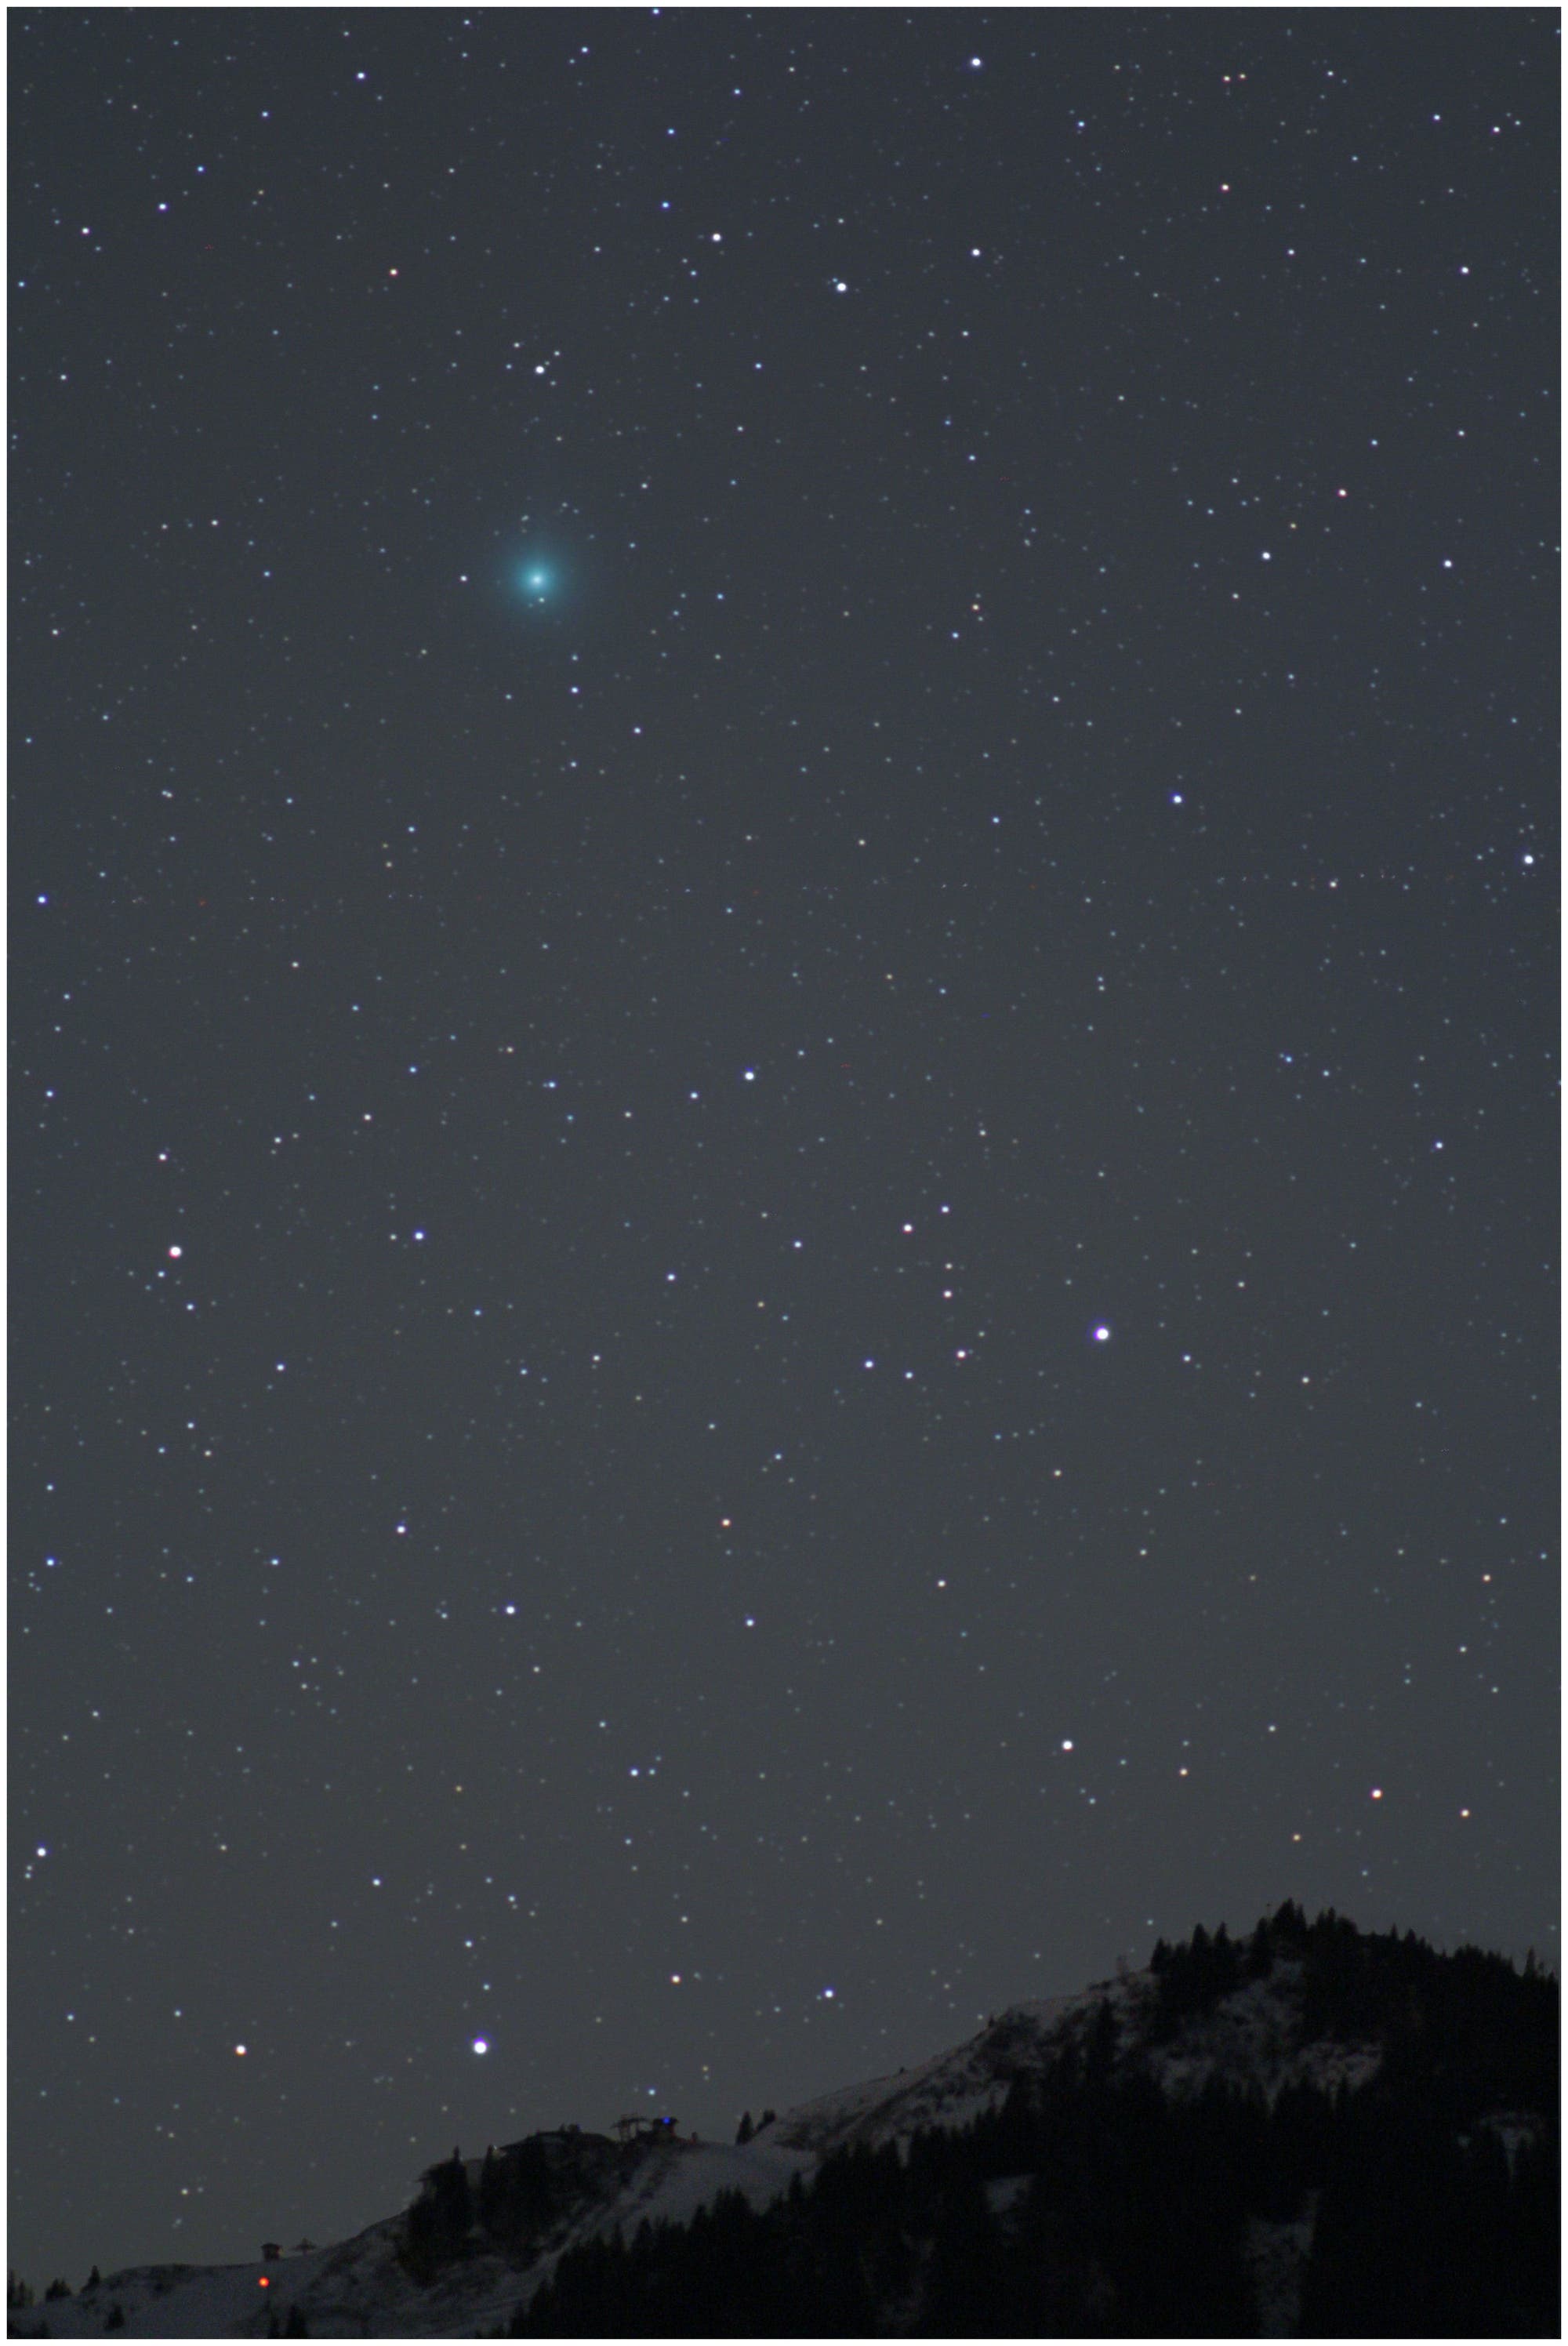 Komet C/2014 Q2 Lovejoy über dem Brauneck